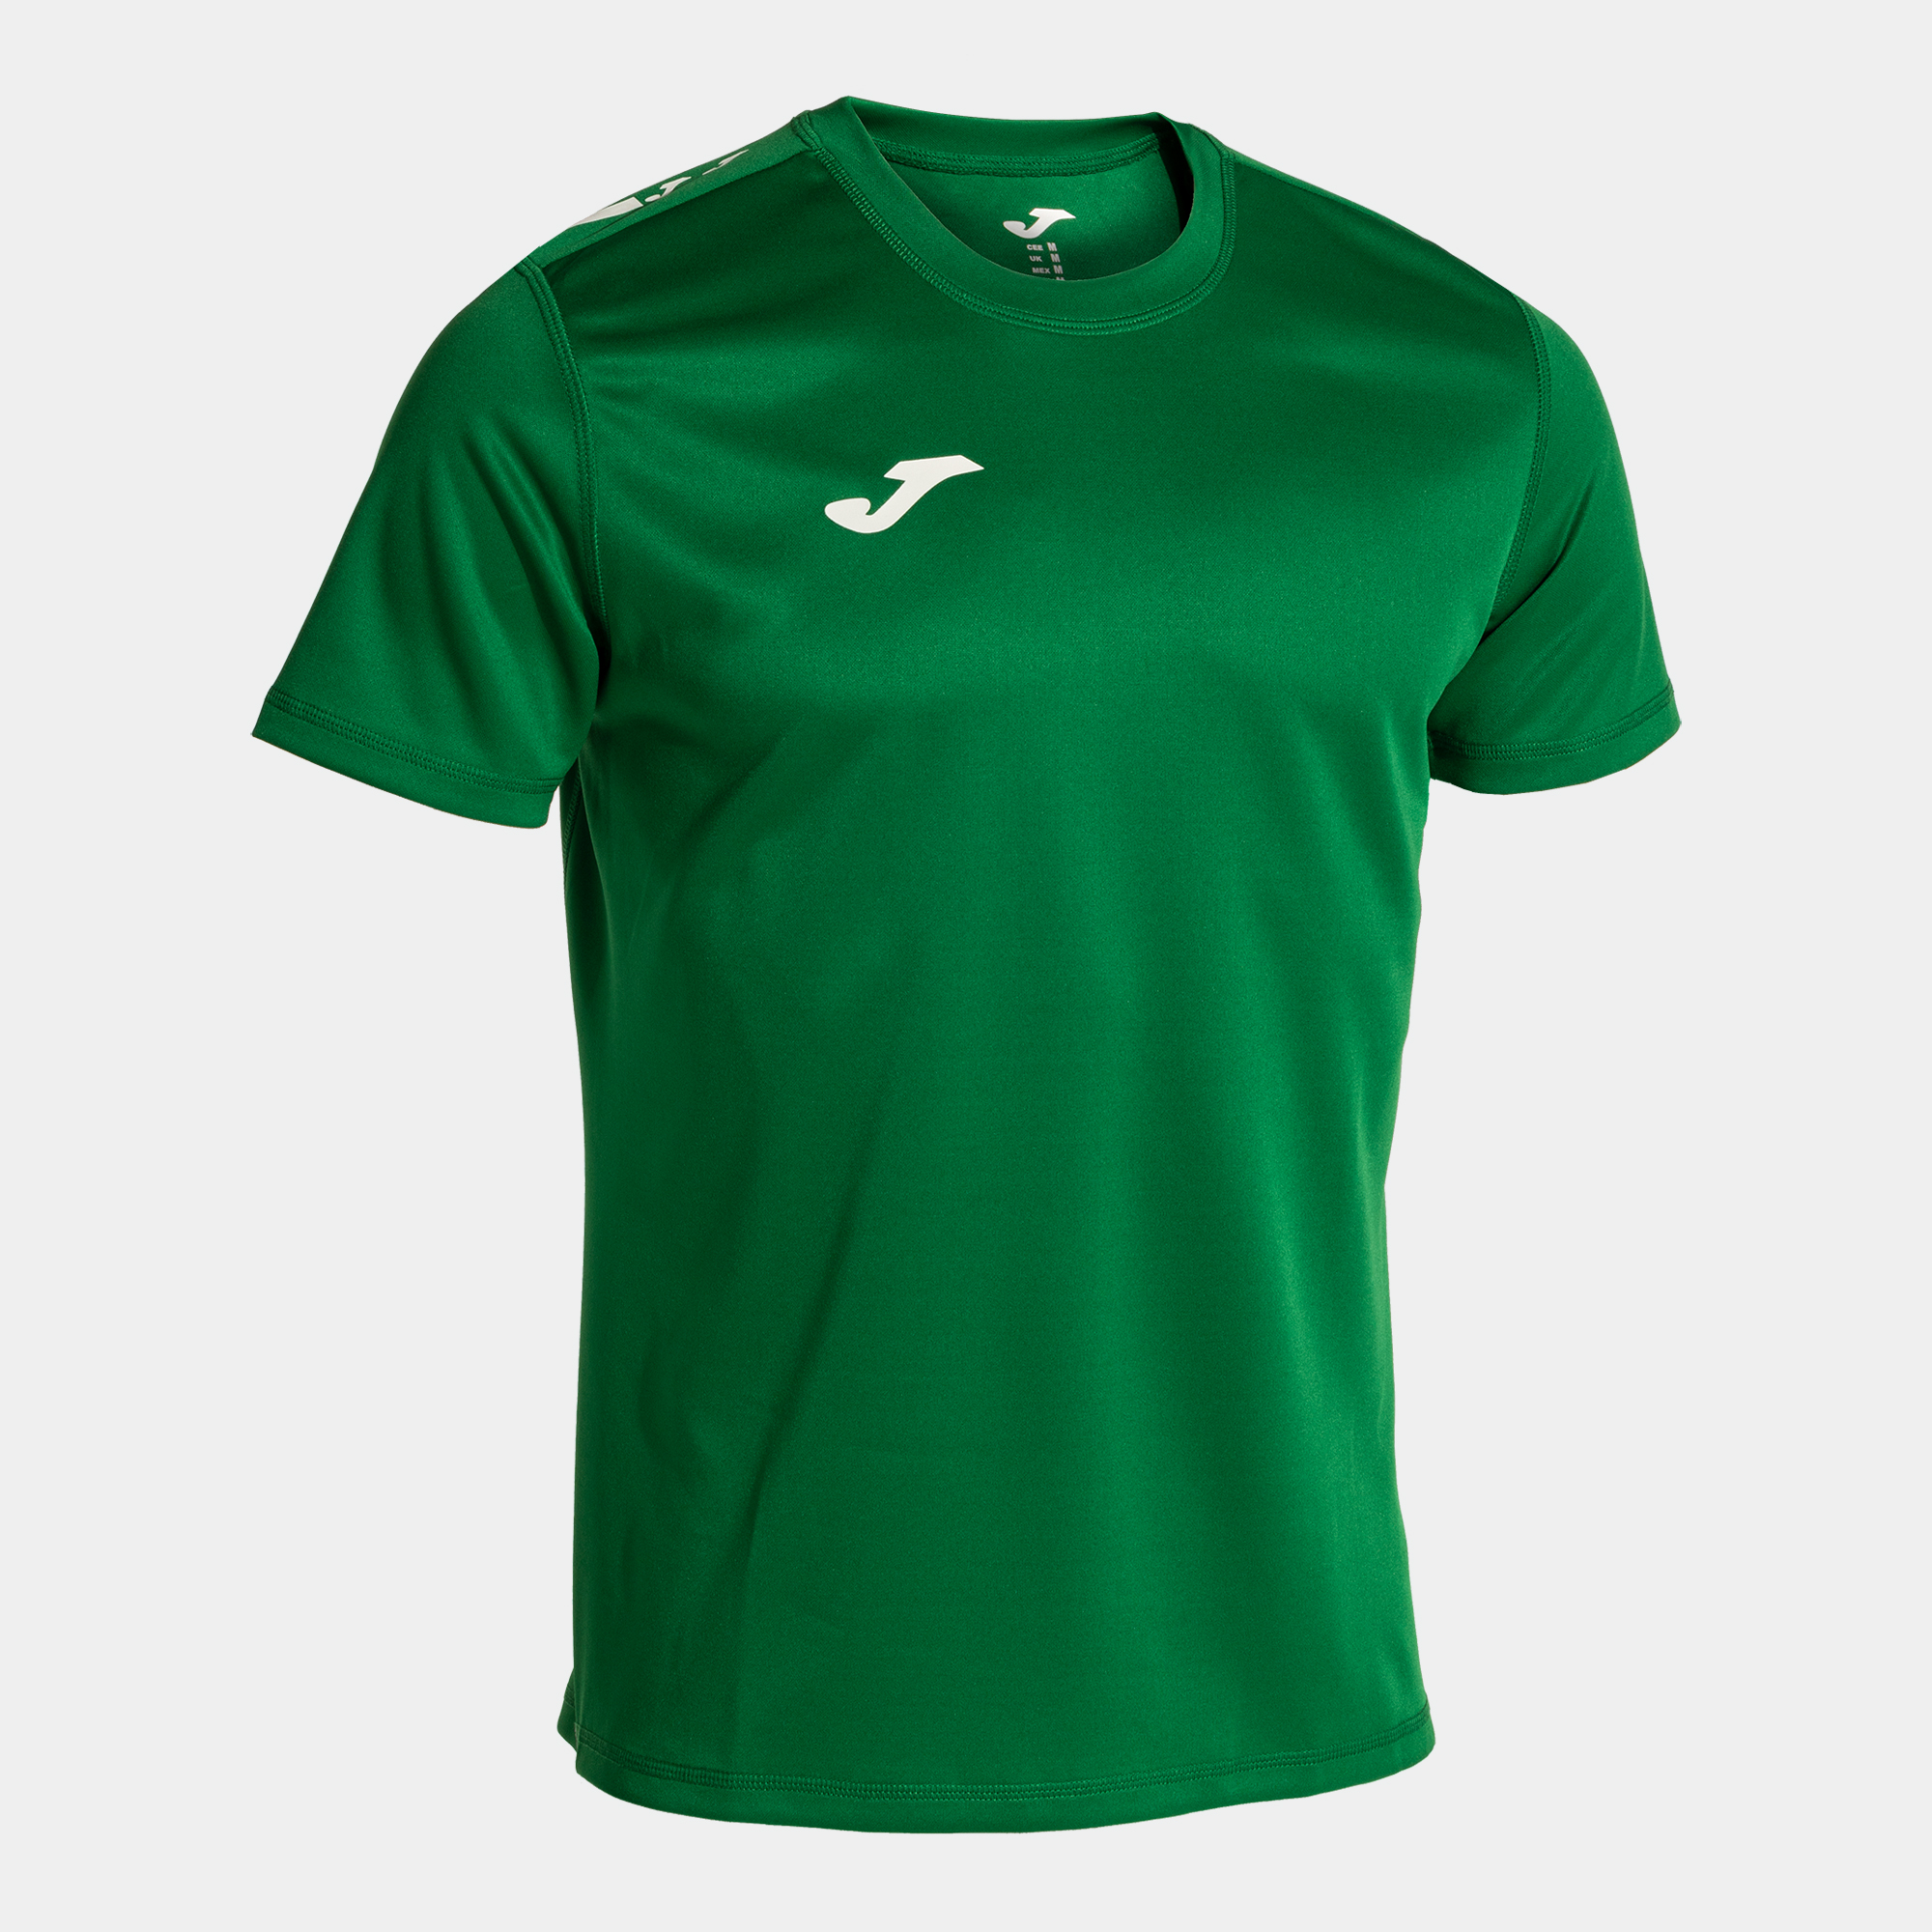 Camiseta Manga Corta Joma Olimpiada Rugby - verde - 